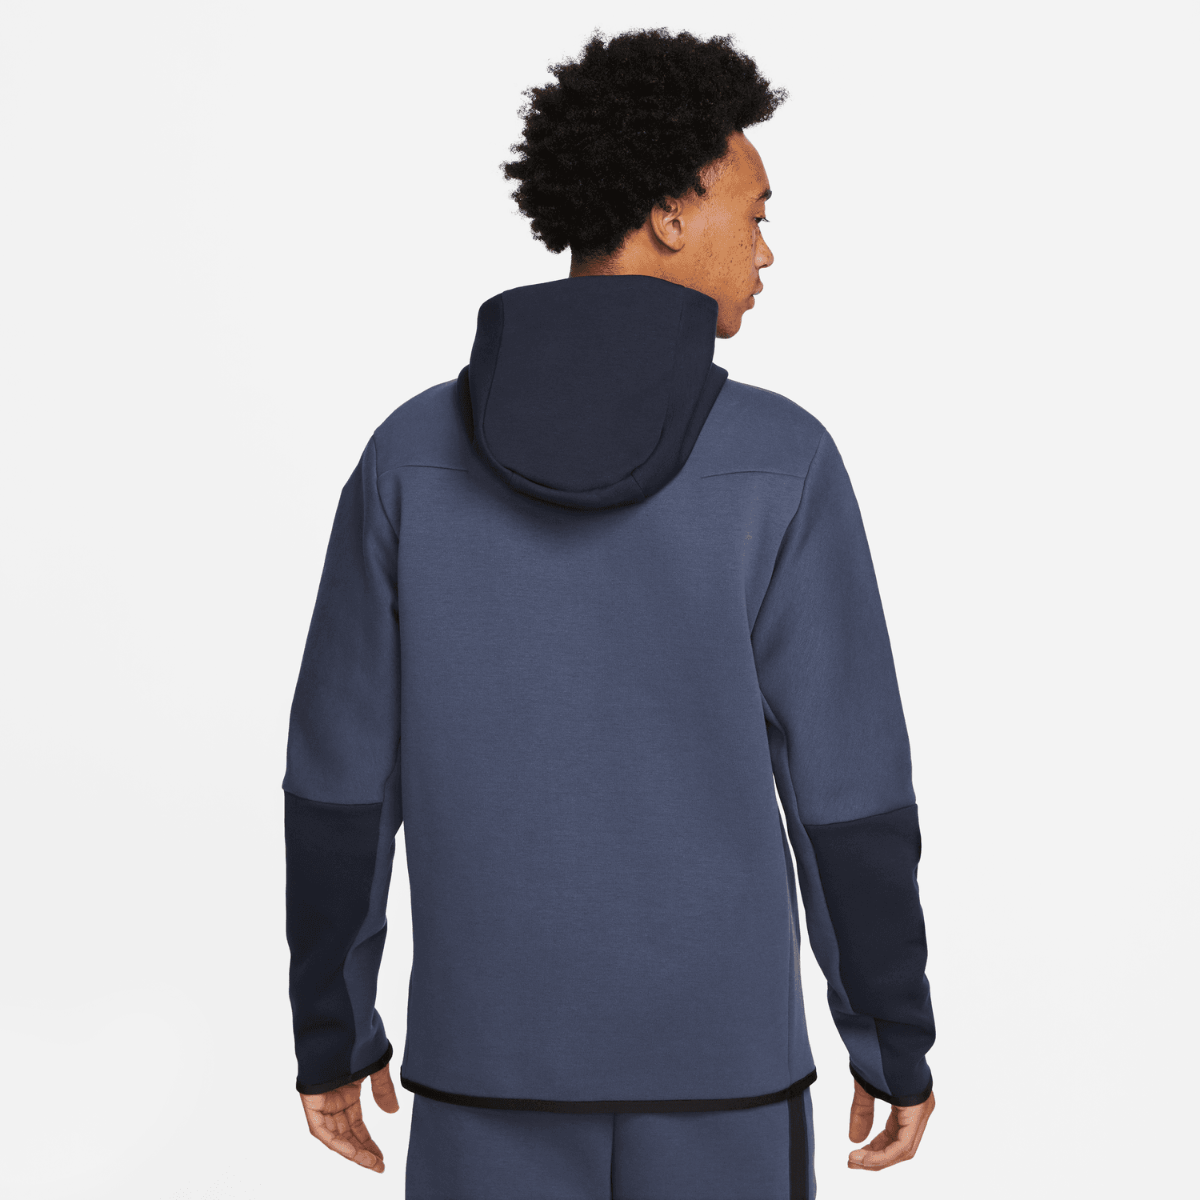 Sudadera con capucha Nike Tech Fleece - Azul/Negro